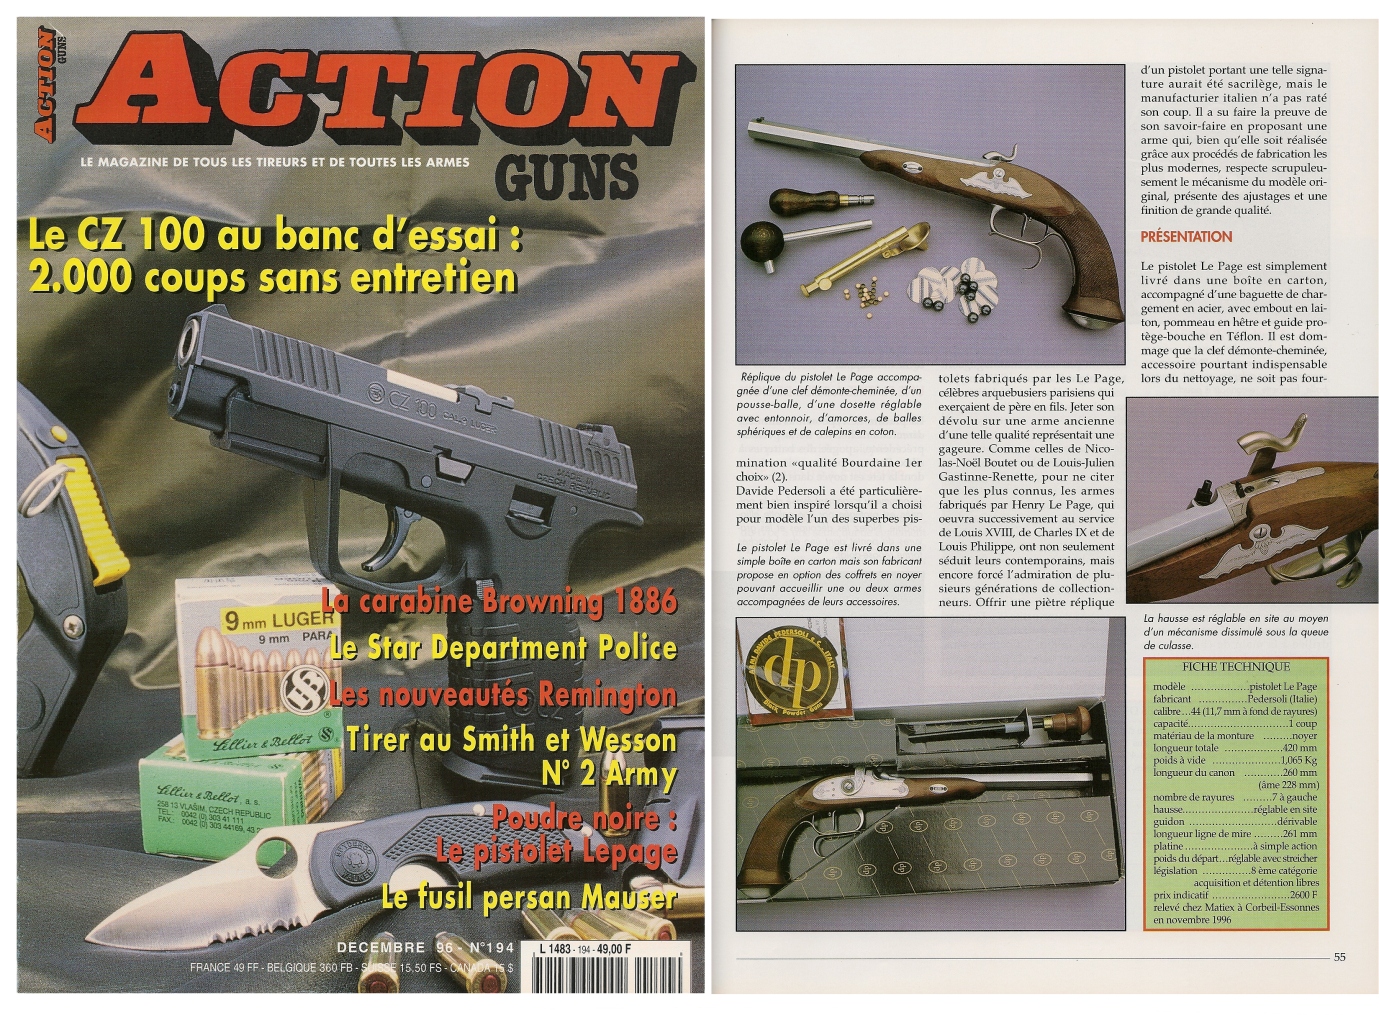 Le banc d'essai du pistolet Le Page à percussion a été publié sur 6 pages dans le magazine Action Guns n°194 (décembre 1996).